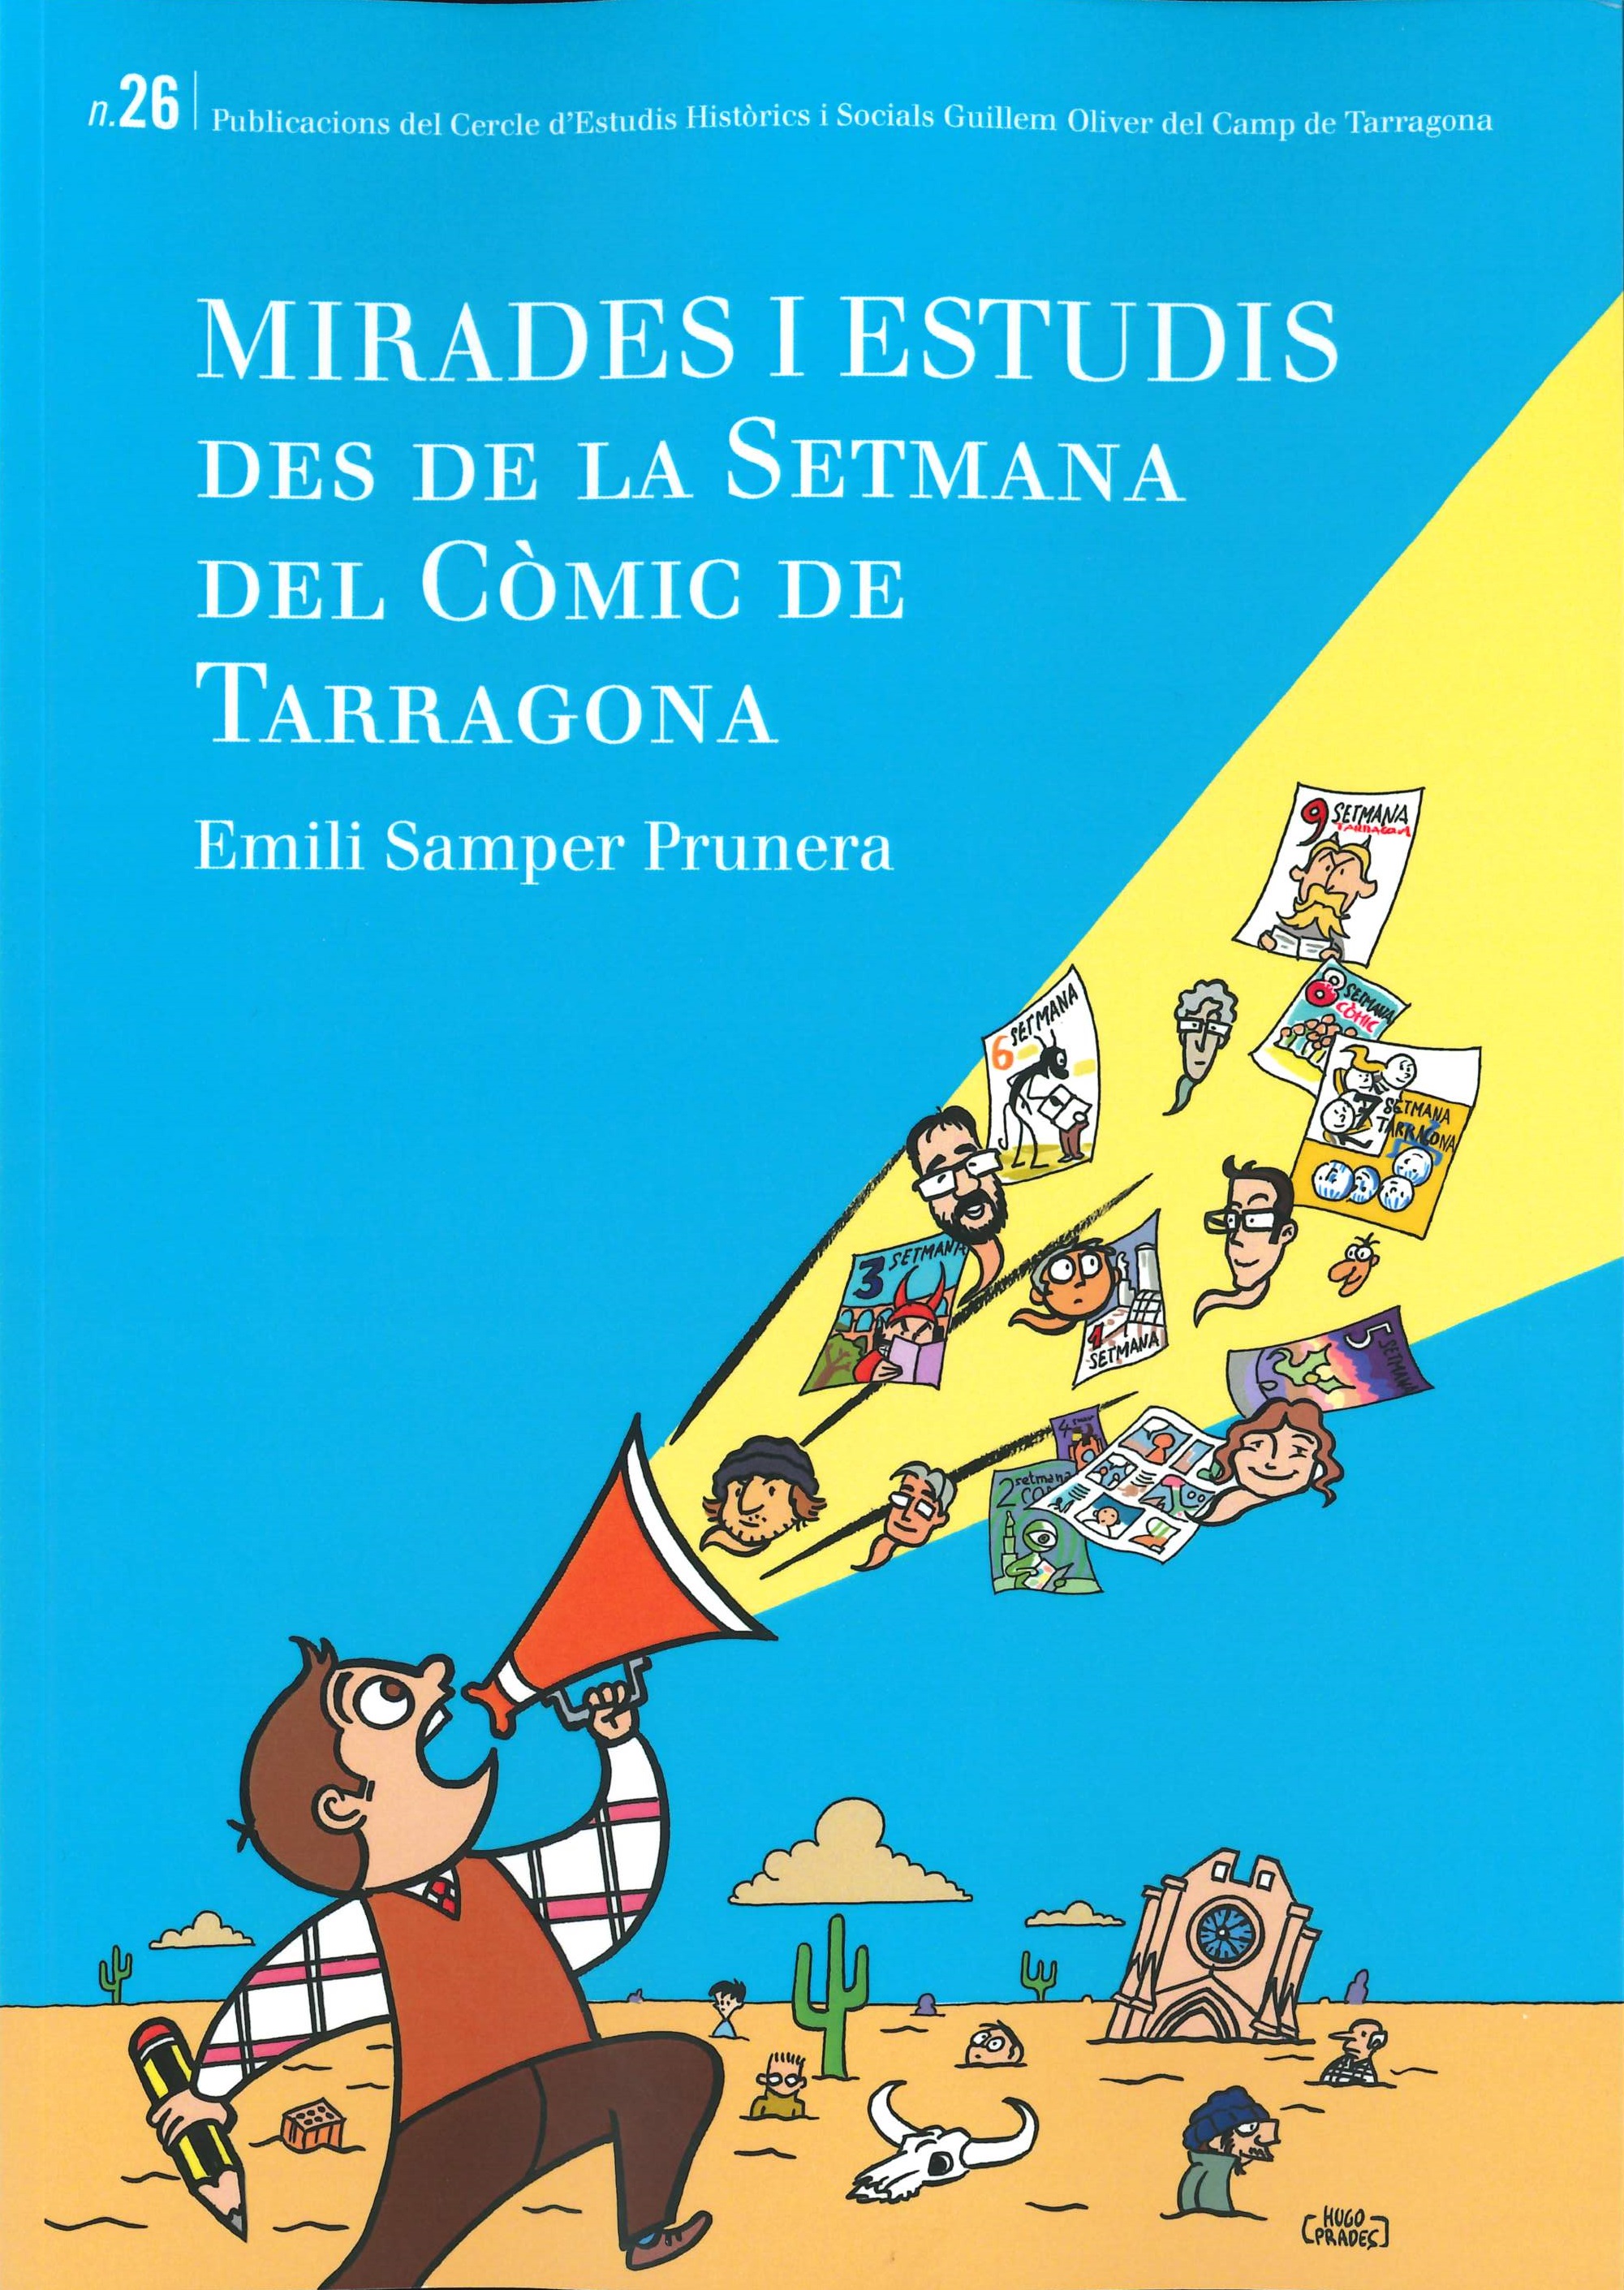 Imagen de portada del libro Mirades i estudis des de la setmana del còmic de Tarragona